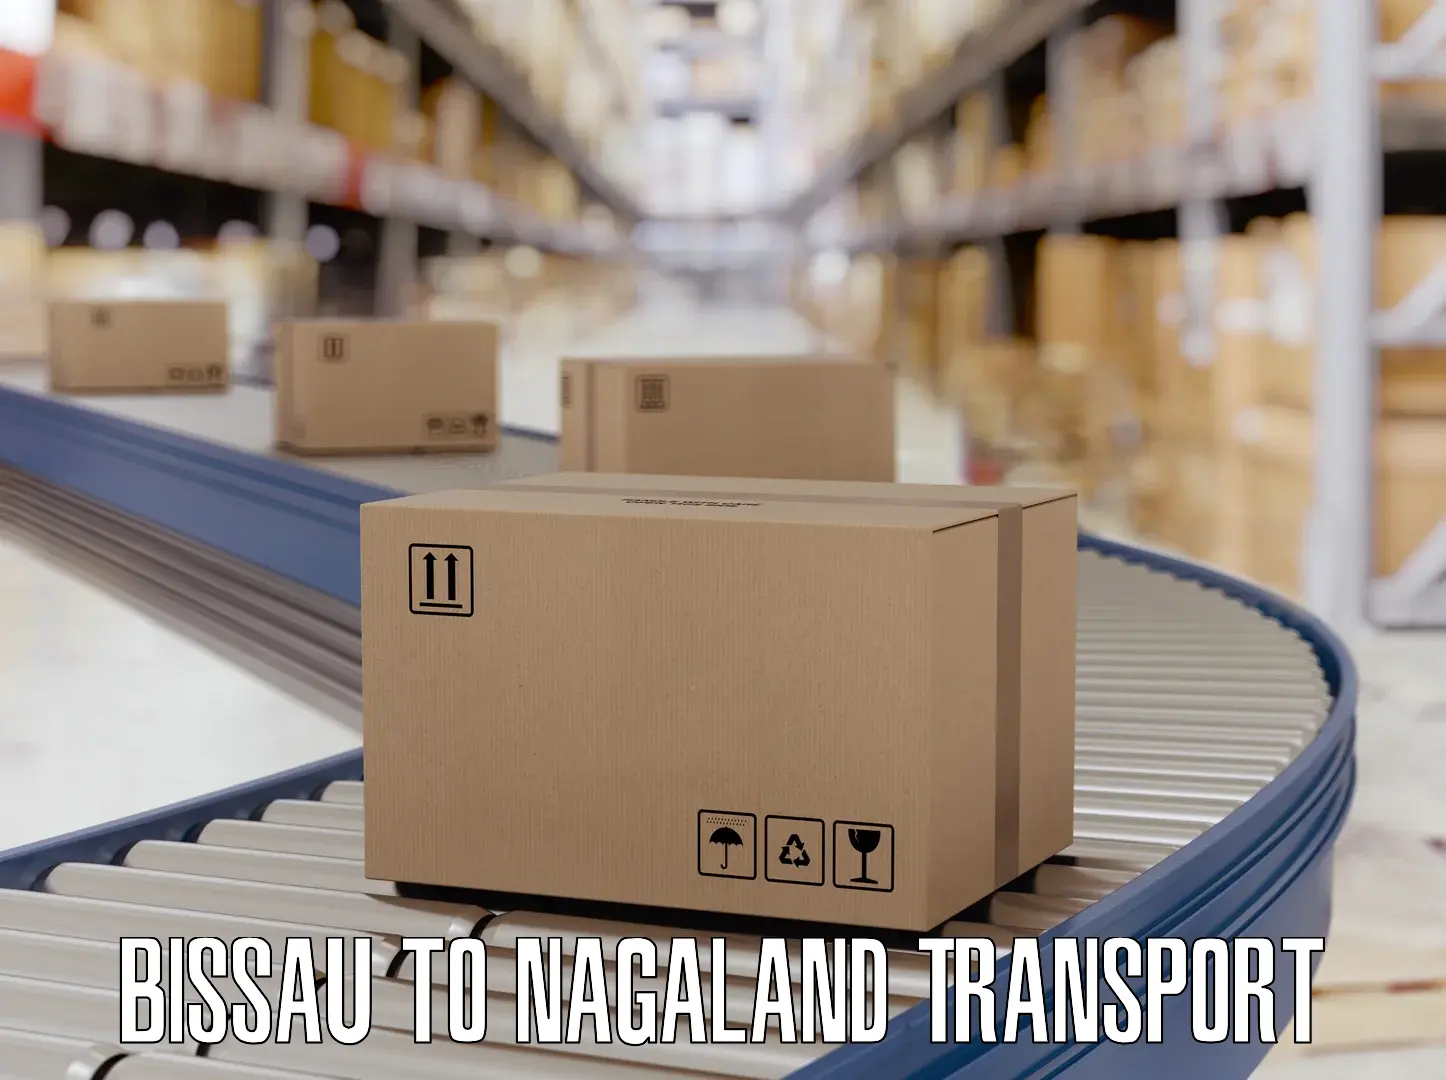 Transportation solution services Bissau to NIT Nagaland